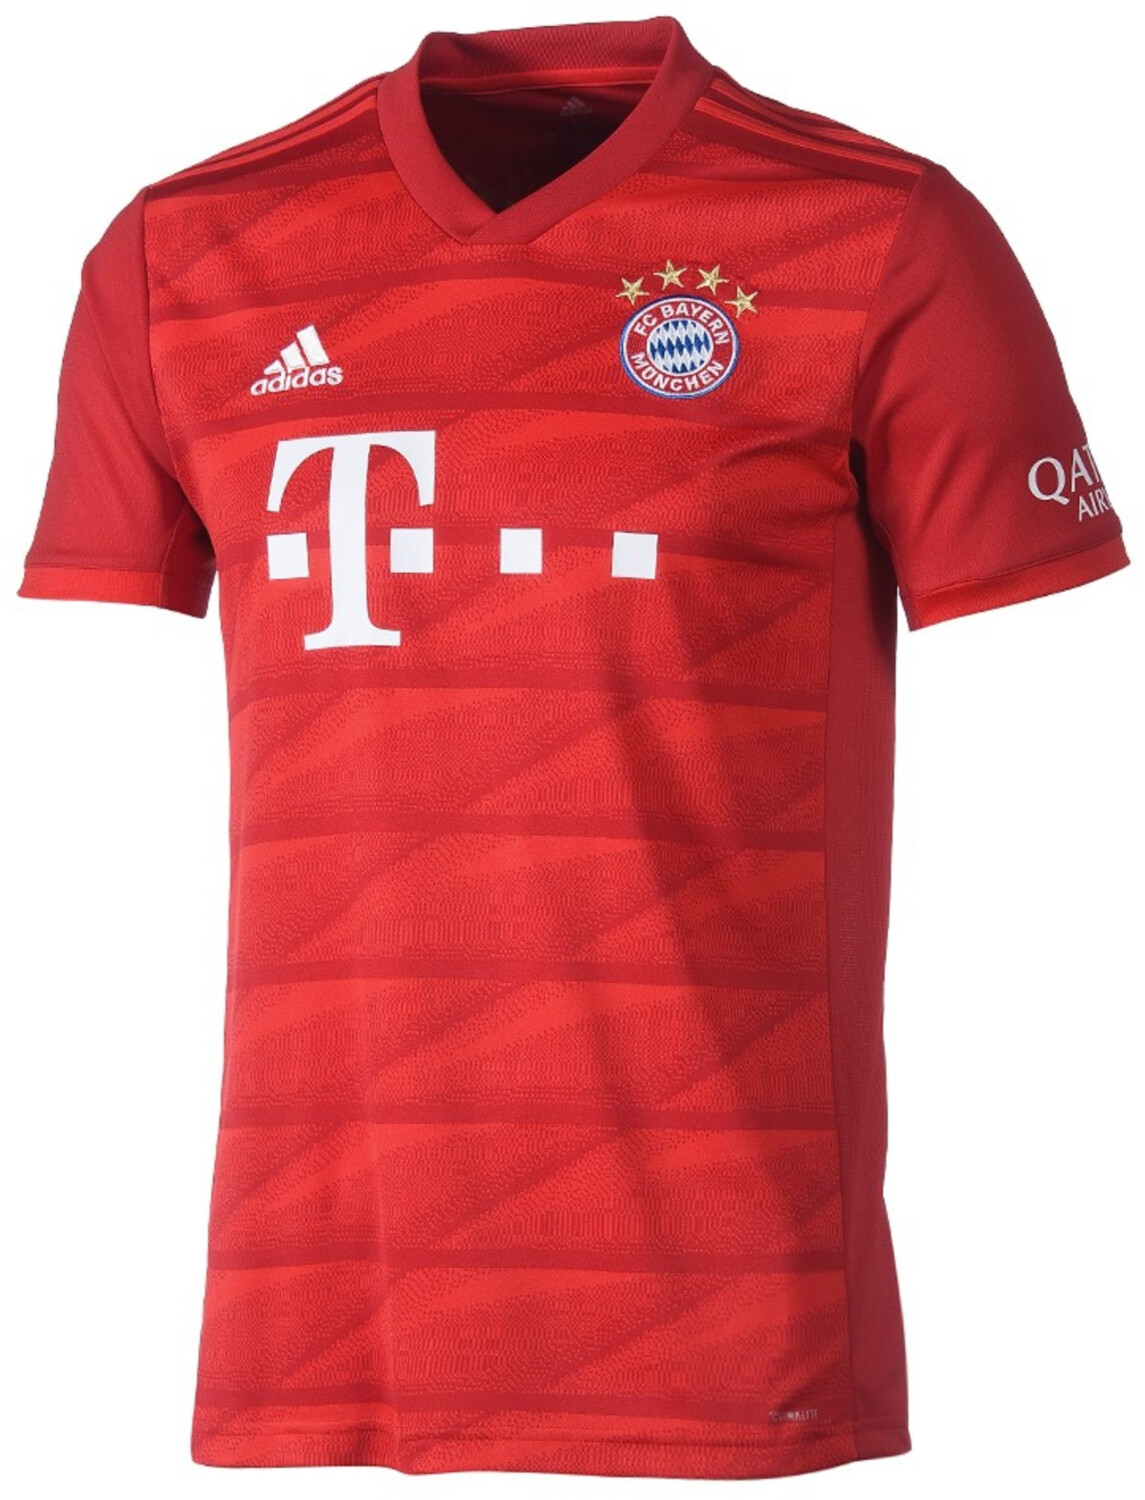 Adidas FC Bayern Home Trikot 2020